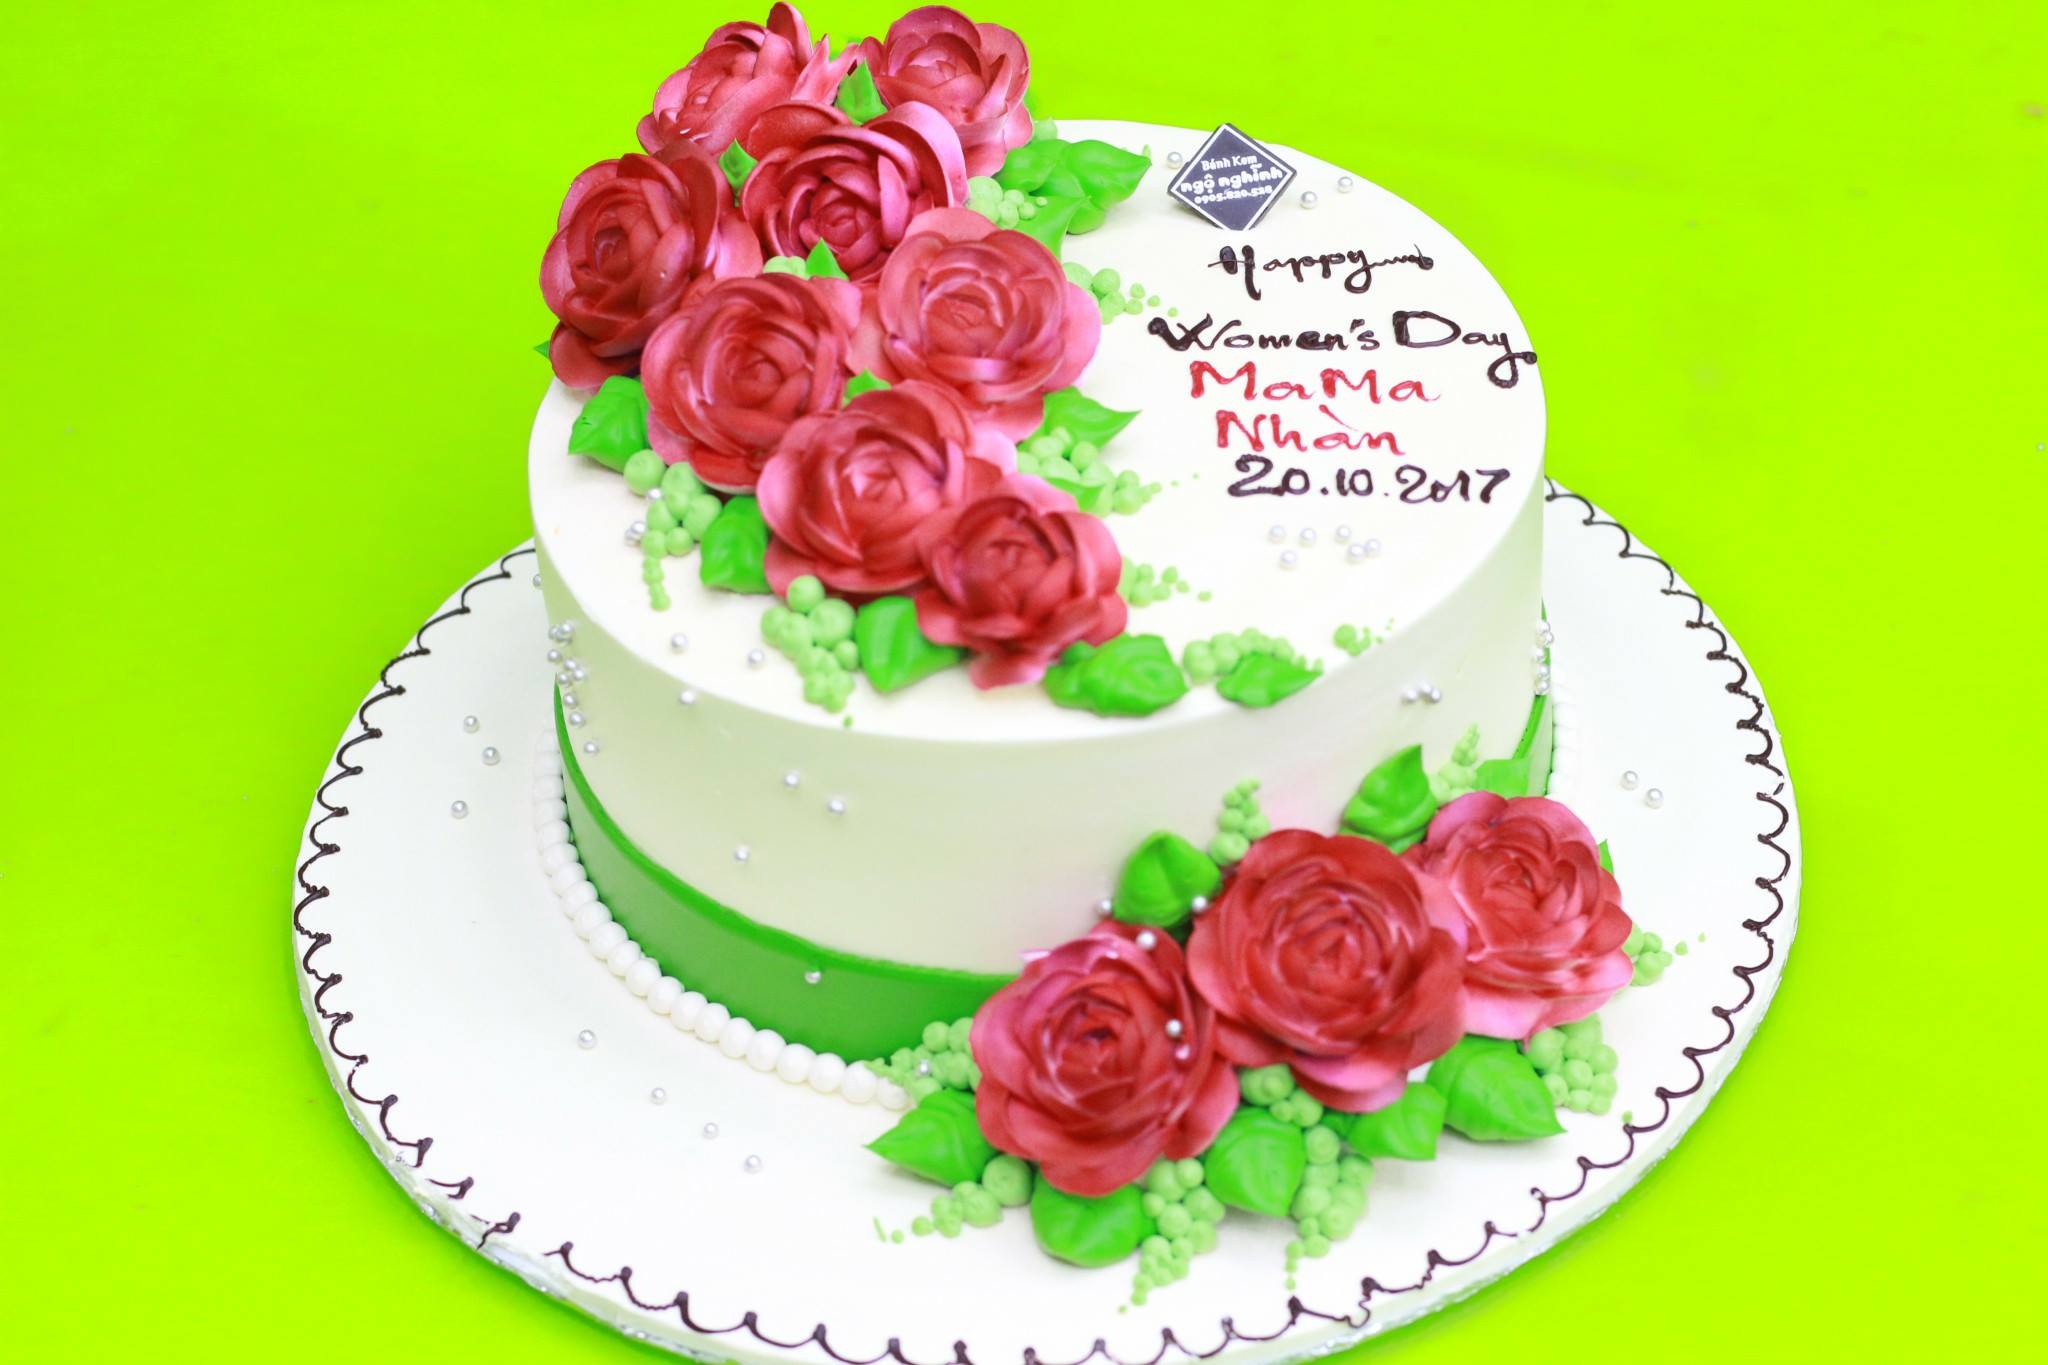 Bánh kem sinh nhật trang trí hoa bất tử đỏ đẹp sang trọng tặng mẹ ...